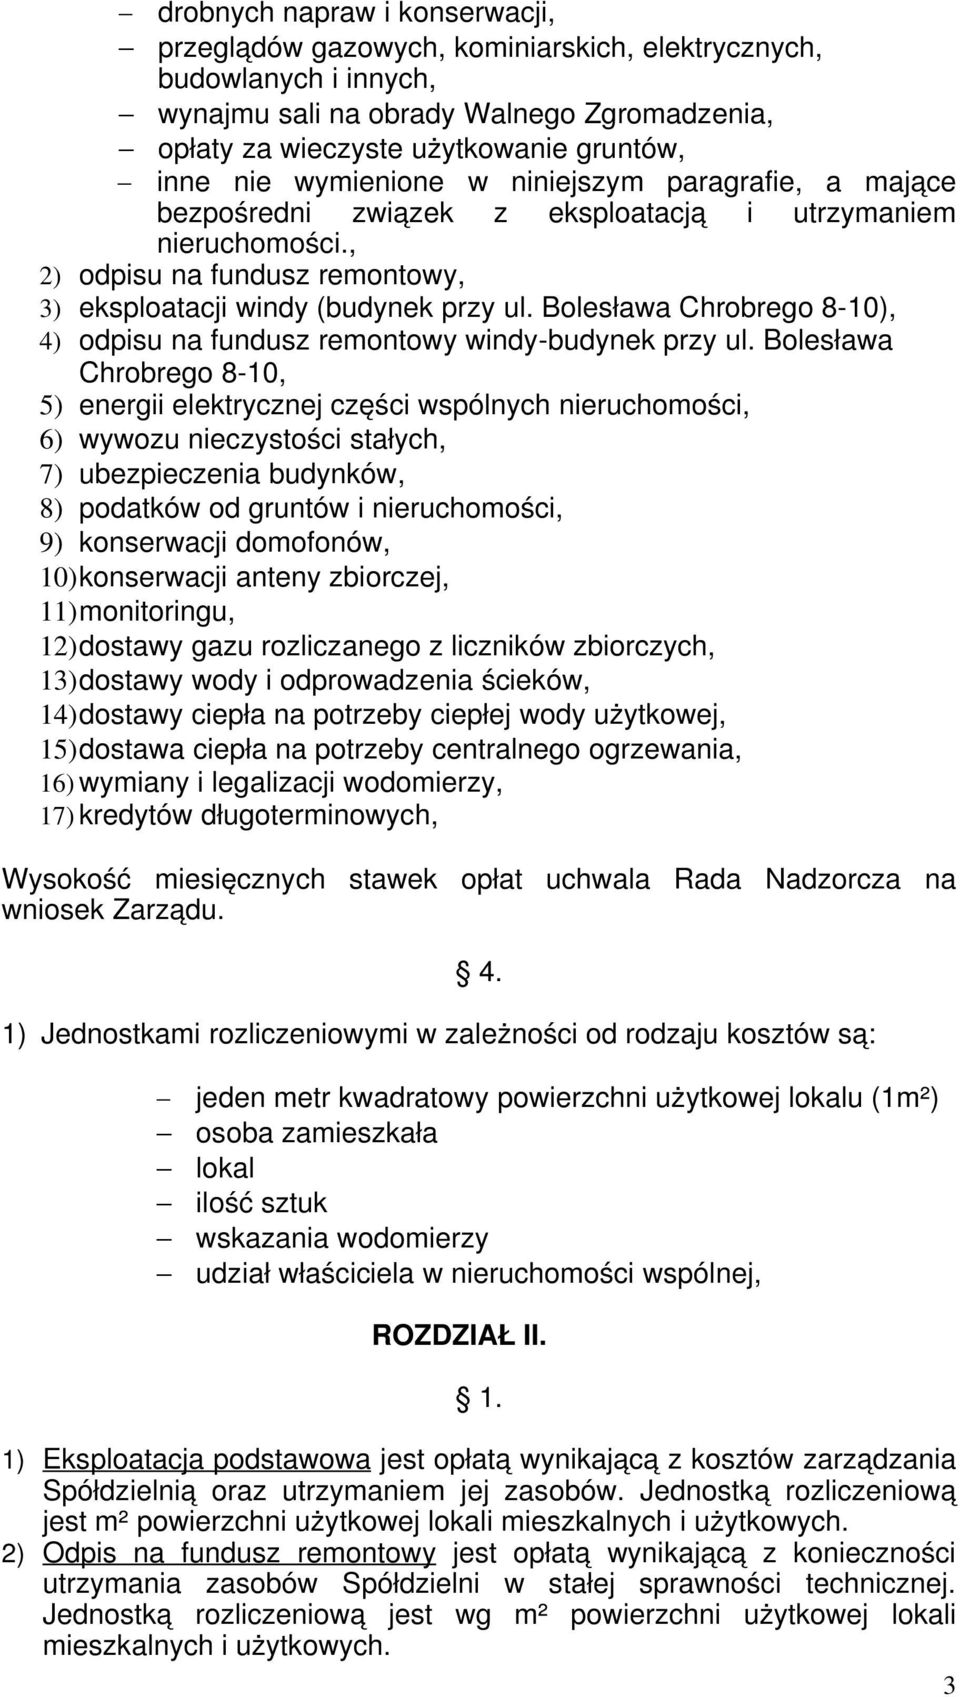 Bolesława Chrobrego 8-10), 4) odpisu na fundusz remontowy windy-budynek przy ul.